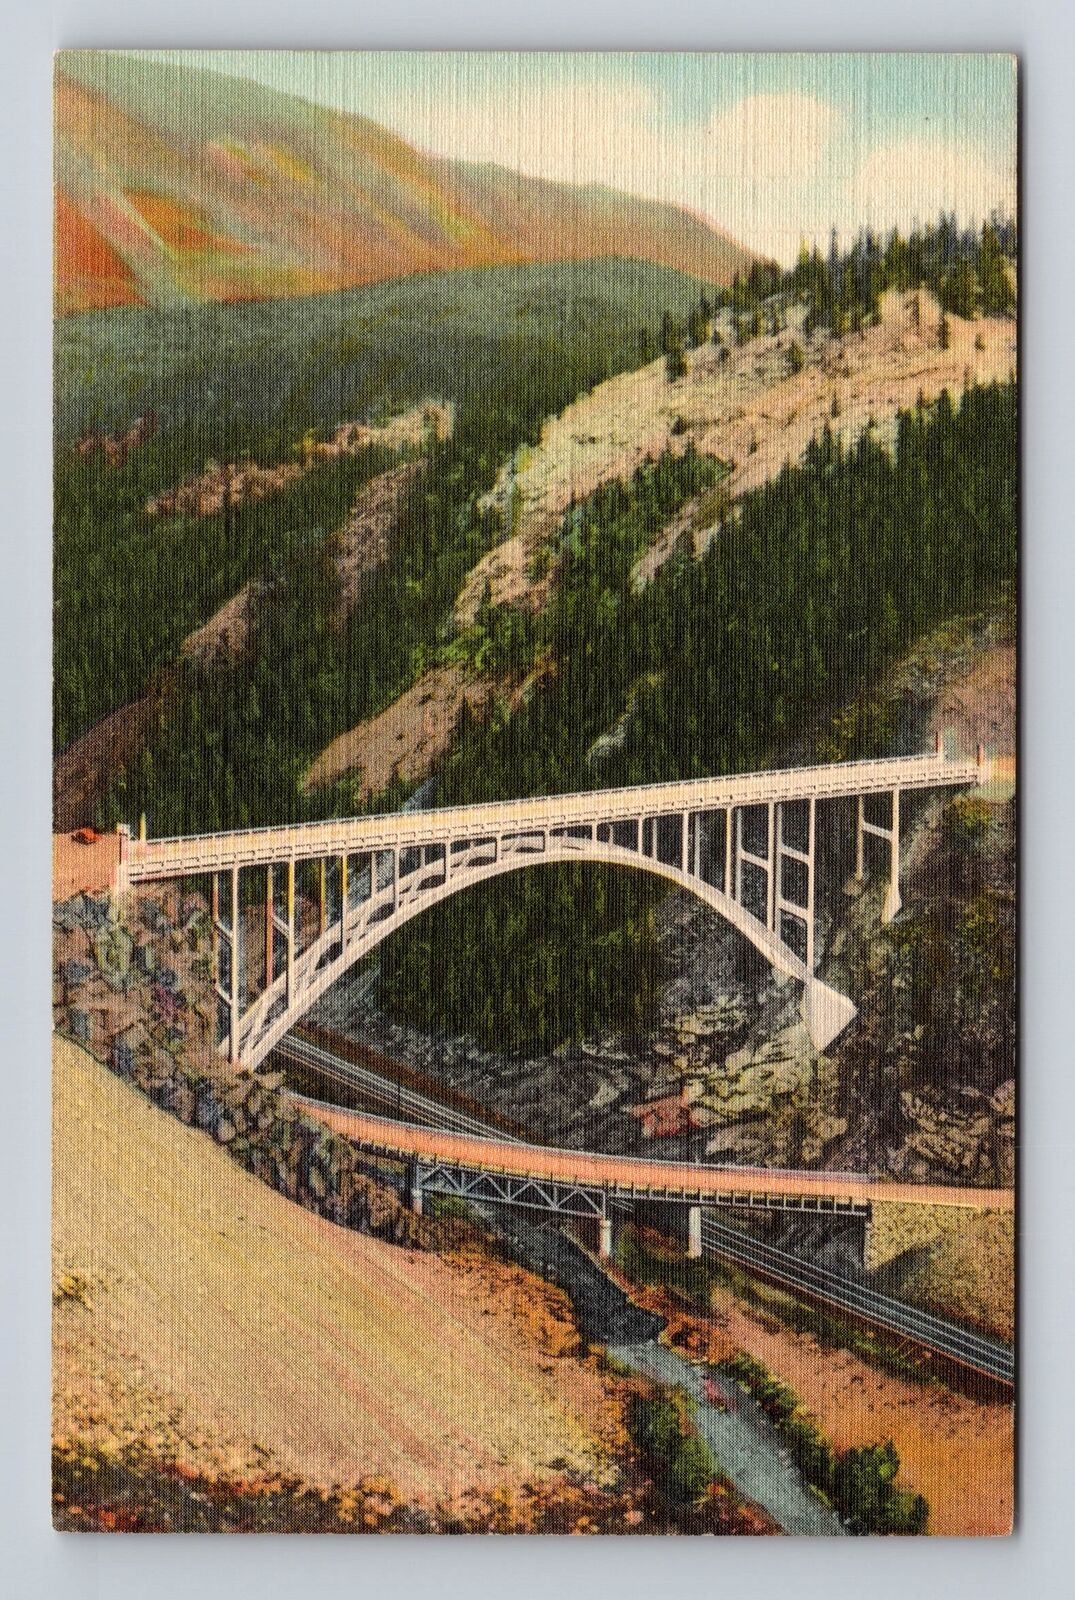 CO-Colorado, High Bridge Over Eagle River Carson, Antique, Vintage Postcard